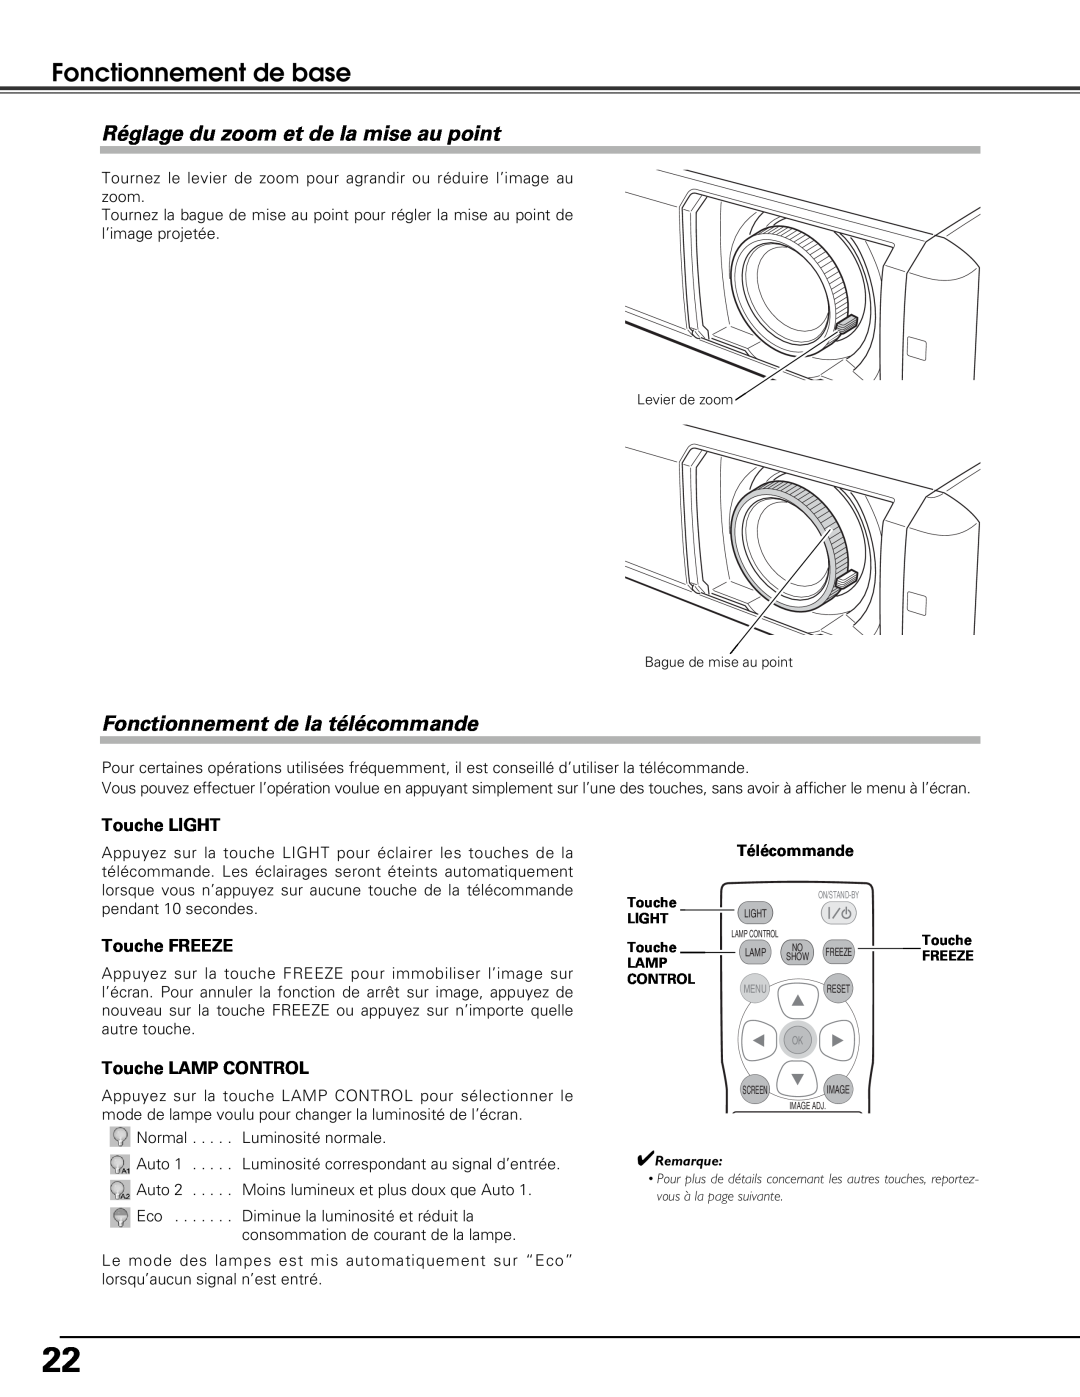 Sanyo PLV-Z5BK manual Réglage du zoom et de la mise au point, Fonctionnement de la télécommande, Fonctionnement de base 